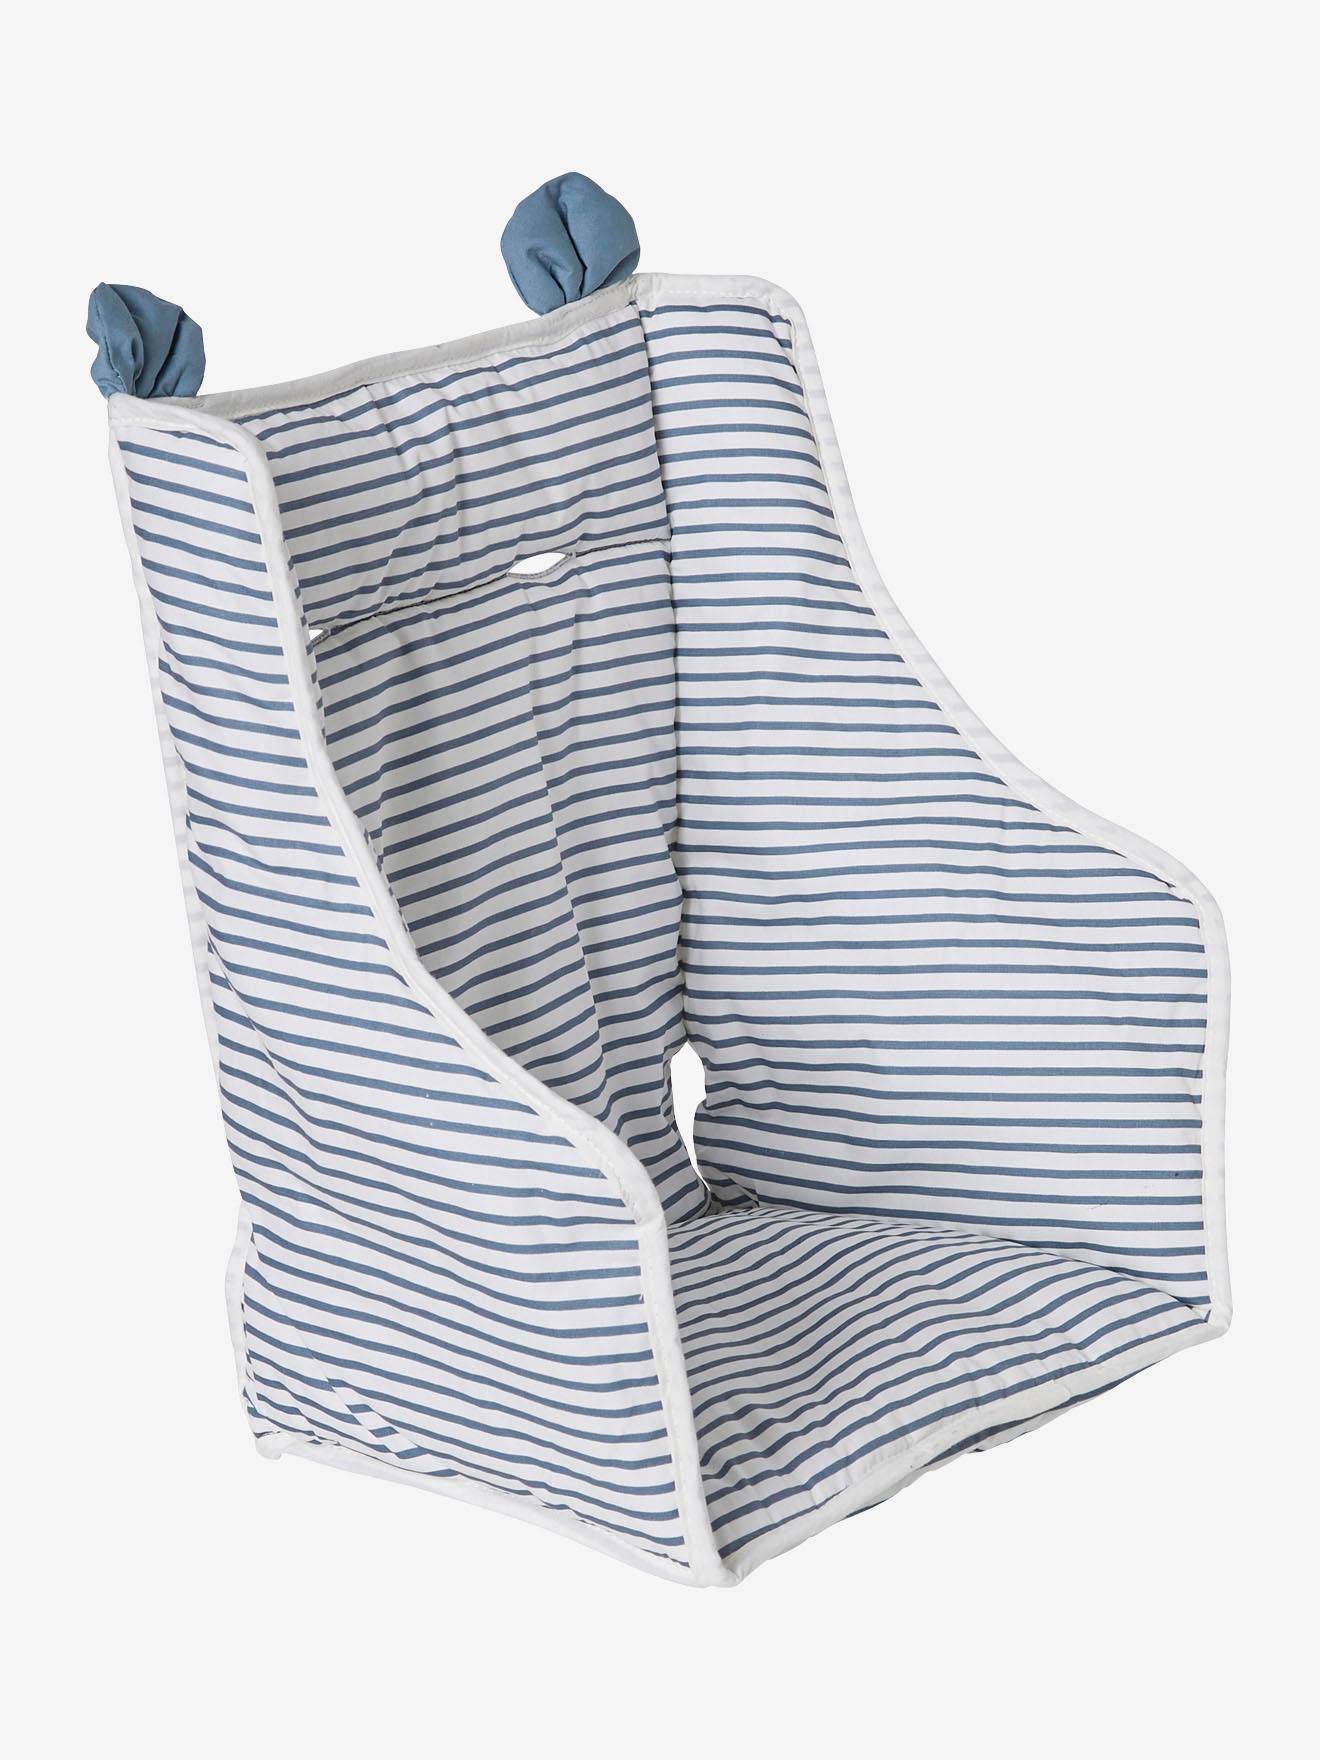 Sangle / harnais pour coussin de chaise haute